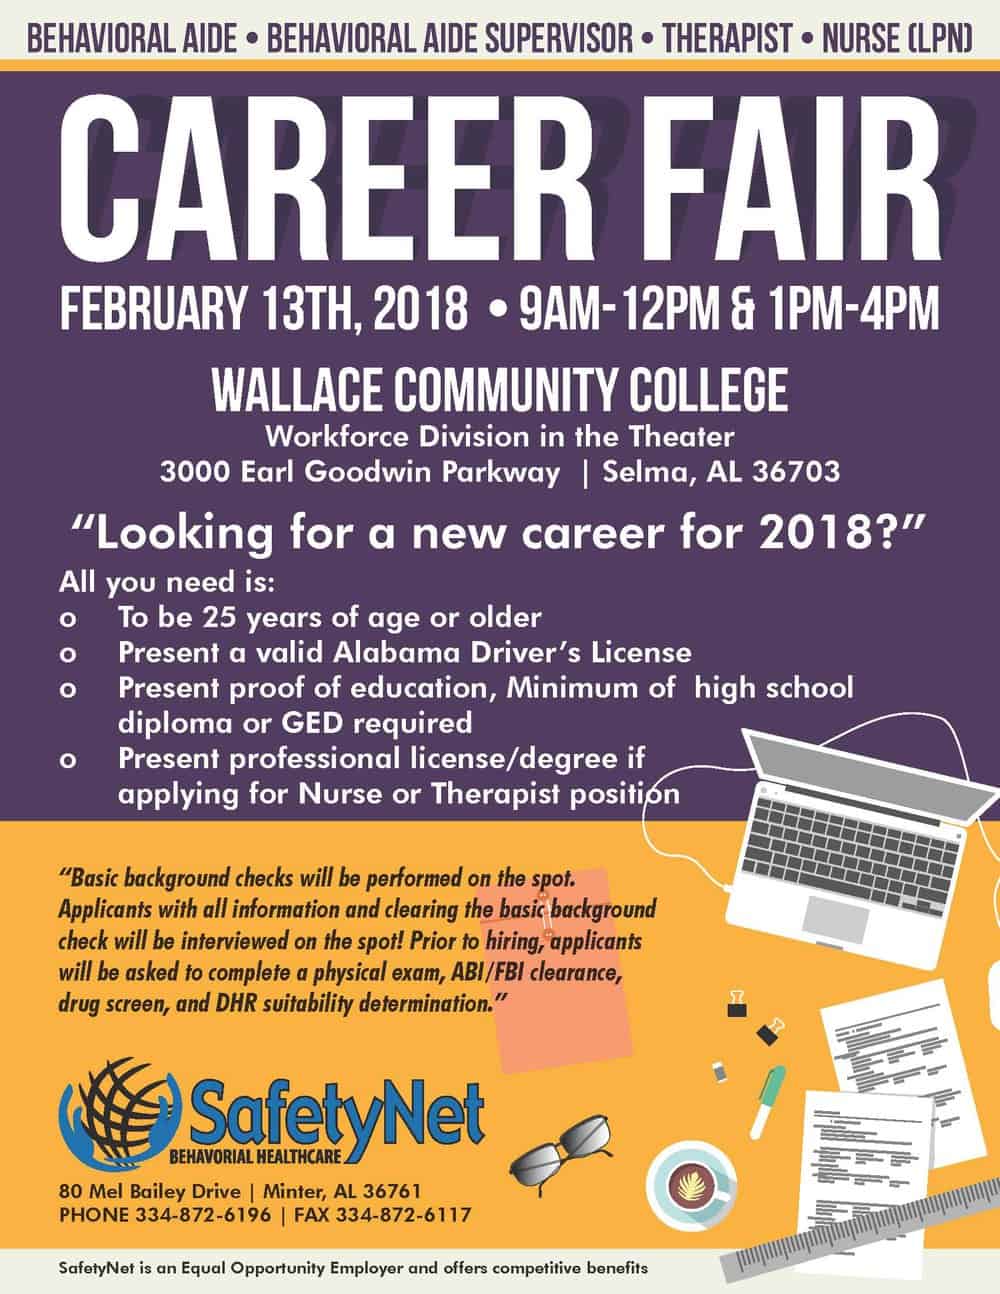 Safety Net Career Fair Flyer 2.13.2018